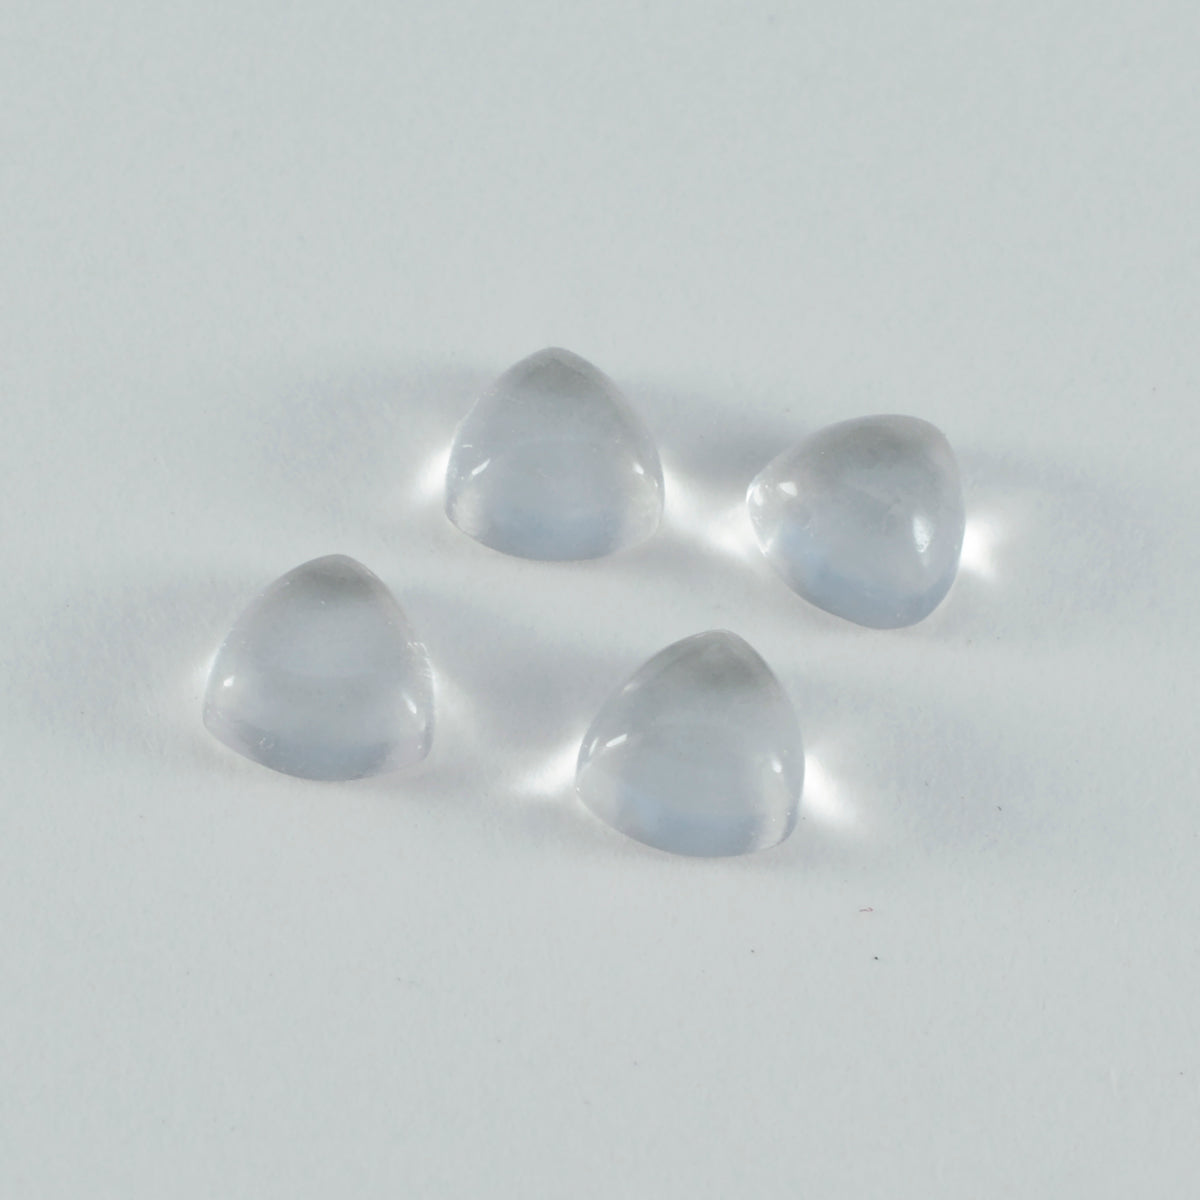 Riyogems 1PC witte kristalkwarts cabochon 7x7 mm biljoen vorm verrassende kwaliteitsedelstenen